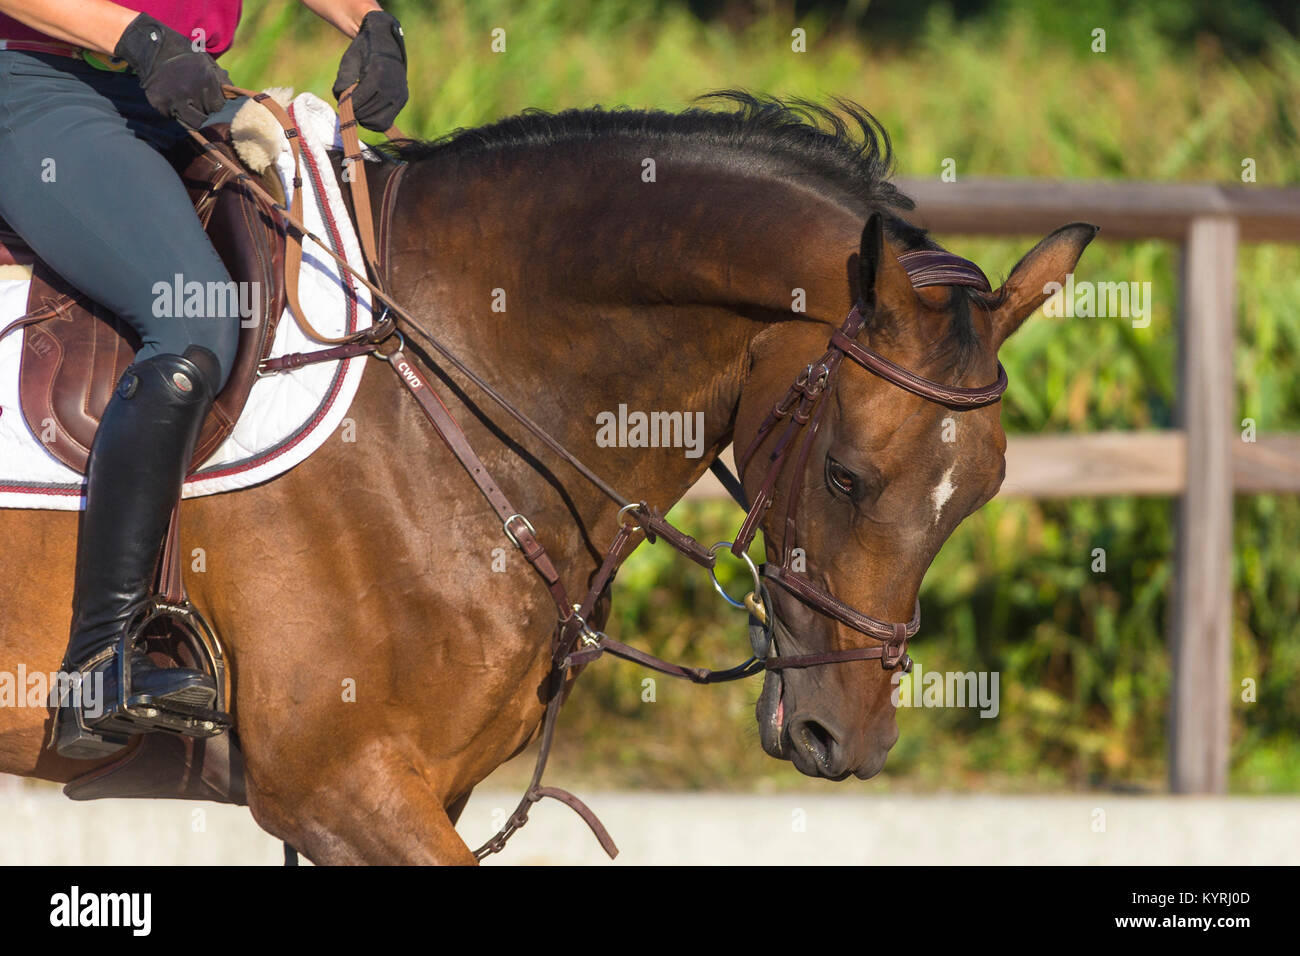 Holländischen Warmblut. Reiter Schulbildung ein Bay Horse, kommunizieren mit Zügel. Niederlande Stockfoto